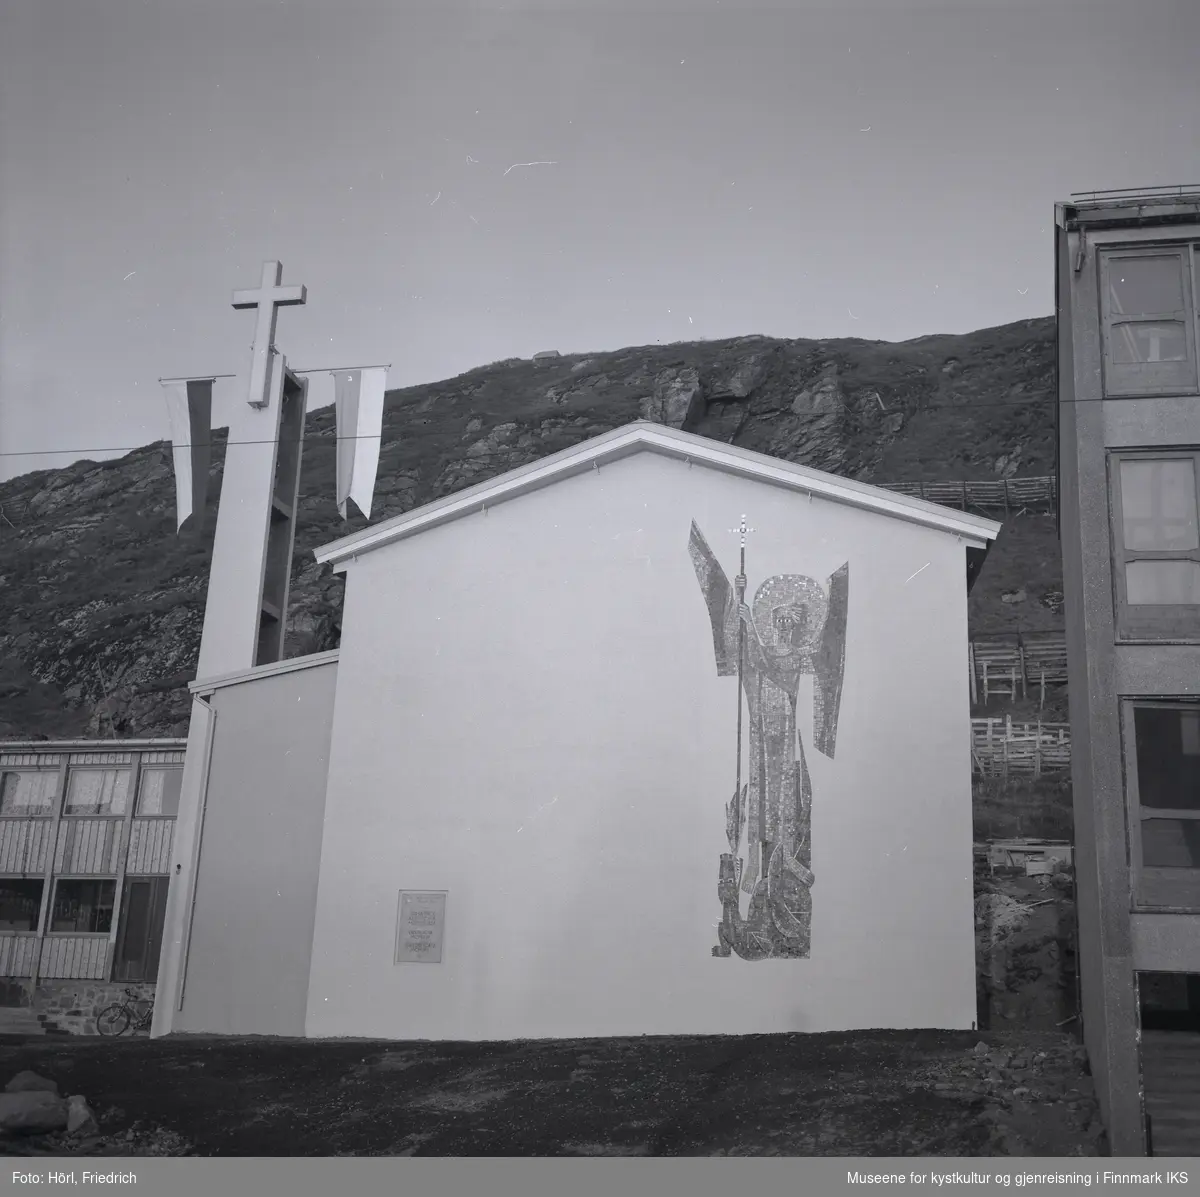 Ved klokketårnet til den katolske kirka St. Mikael i Hammerfest er det montert to stenger med vimpler. Det antas at dette ble gjort i anledning vigslingen den 3. august 1958. 
Kirkens vegg mot gata er dekorert med en stor mosaikk av St. Mikael, skapt av den tyske billedkunstneren Karl Manninger. Ved kirkens sidefløy til venstre er en sykkel lent mot veggen. Bak kirkebygget ser man Salenfjellet. På høyre bildekant ser man deler av nabobygget.